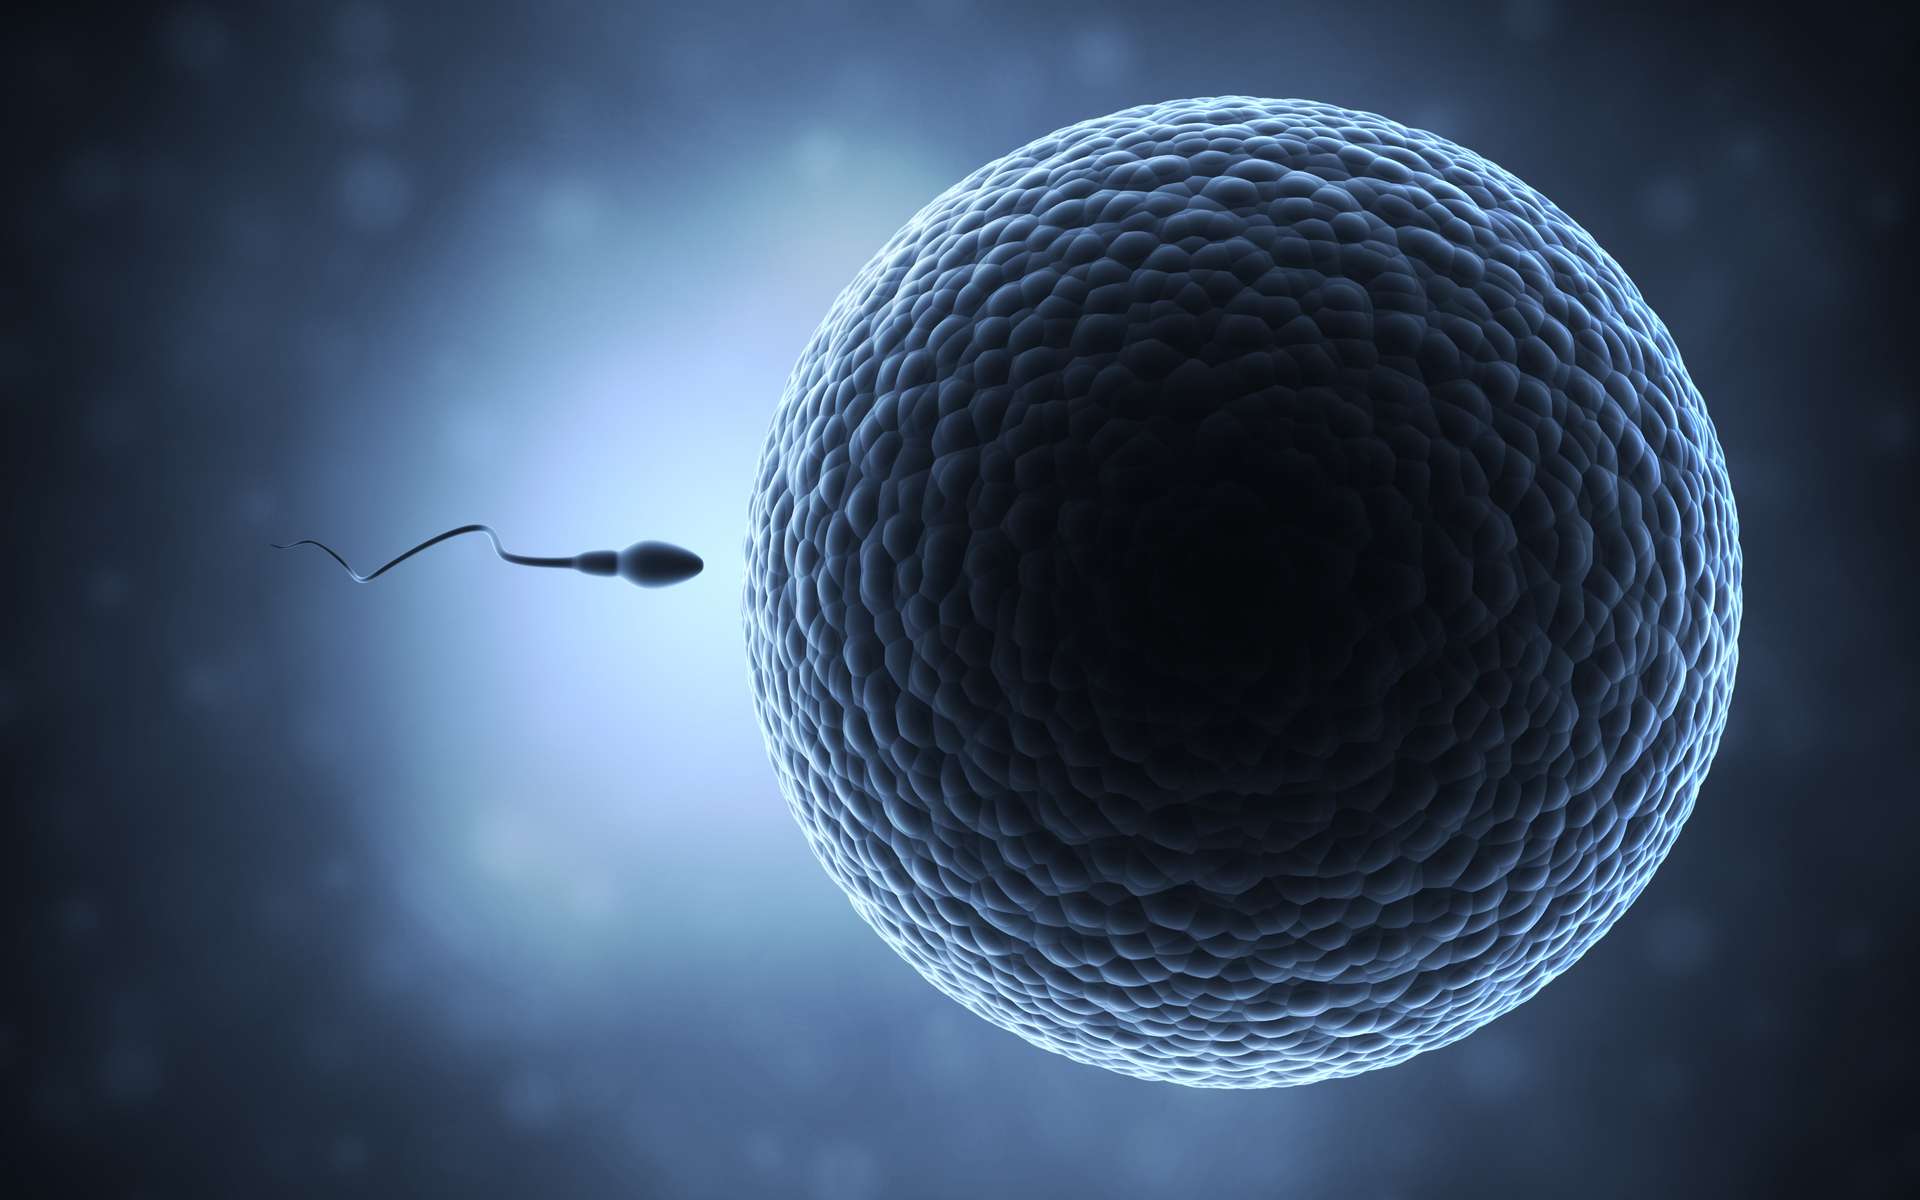 Le déclin du nombre de spermatozoïdes se poursuit « à un rythme accéléré » partout dans le monde